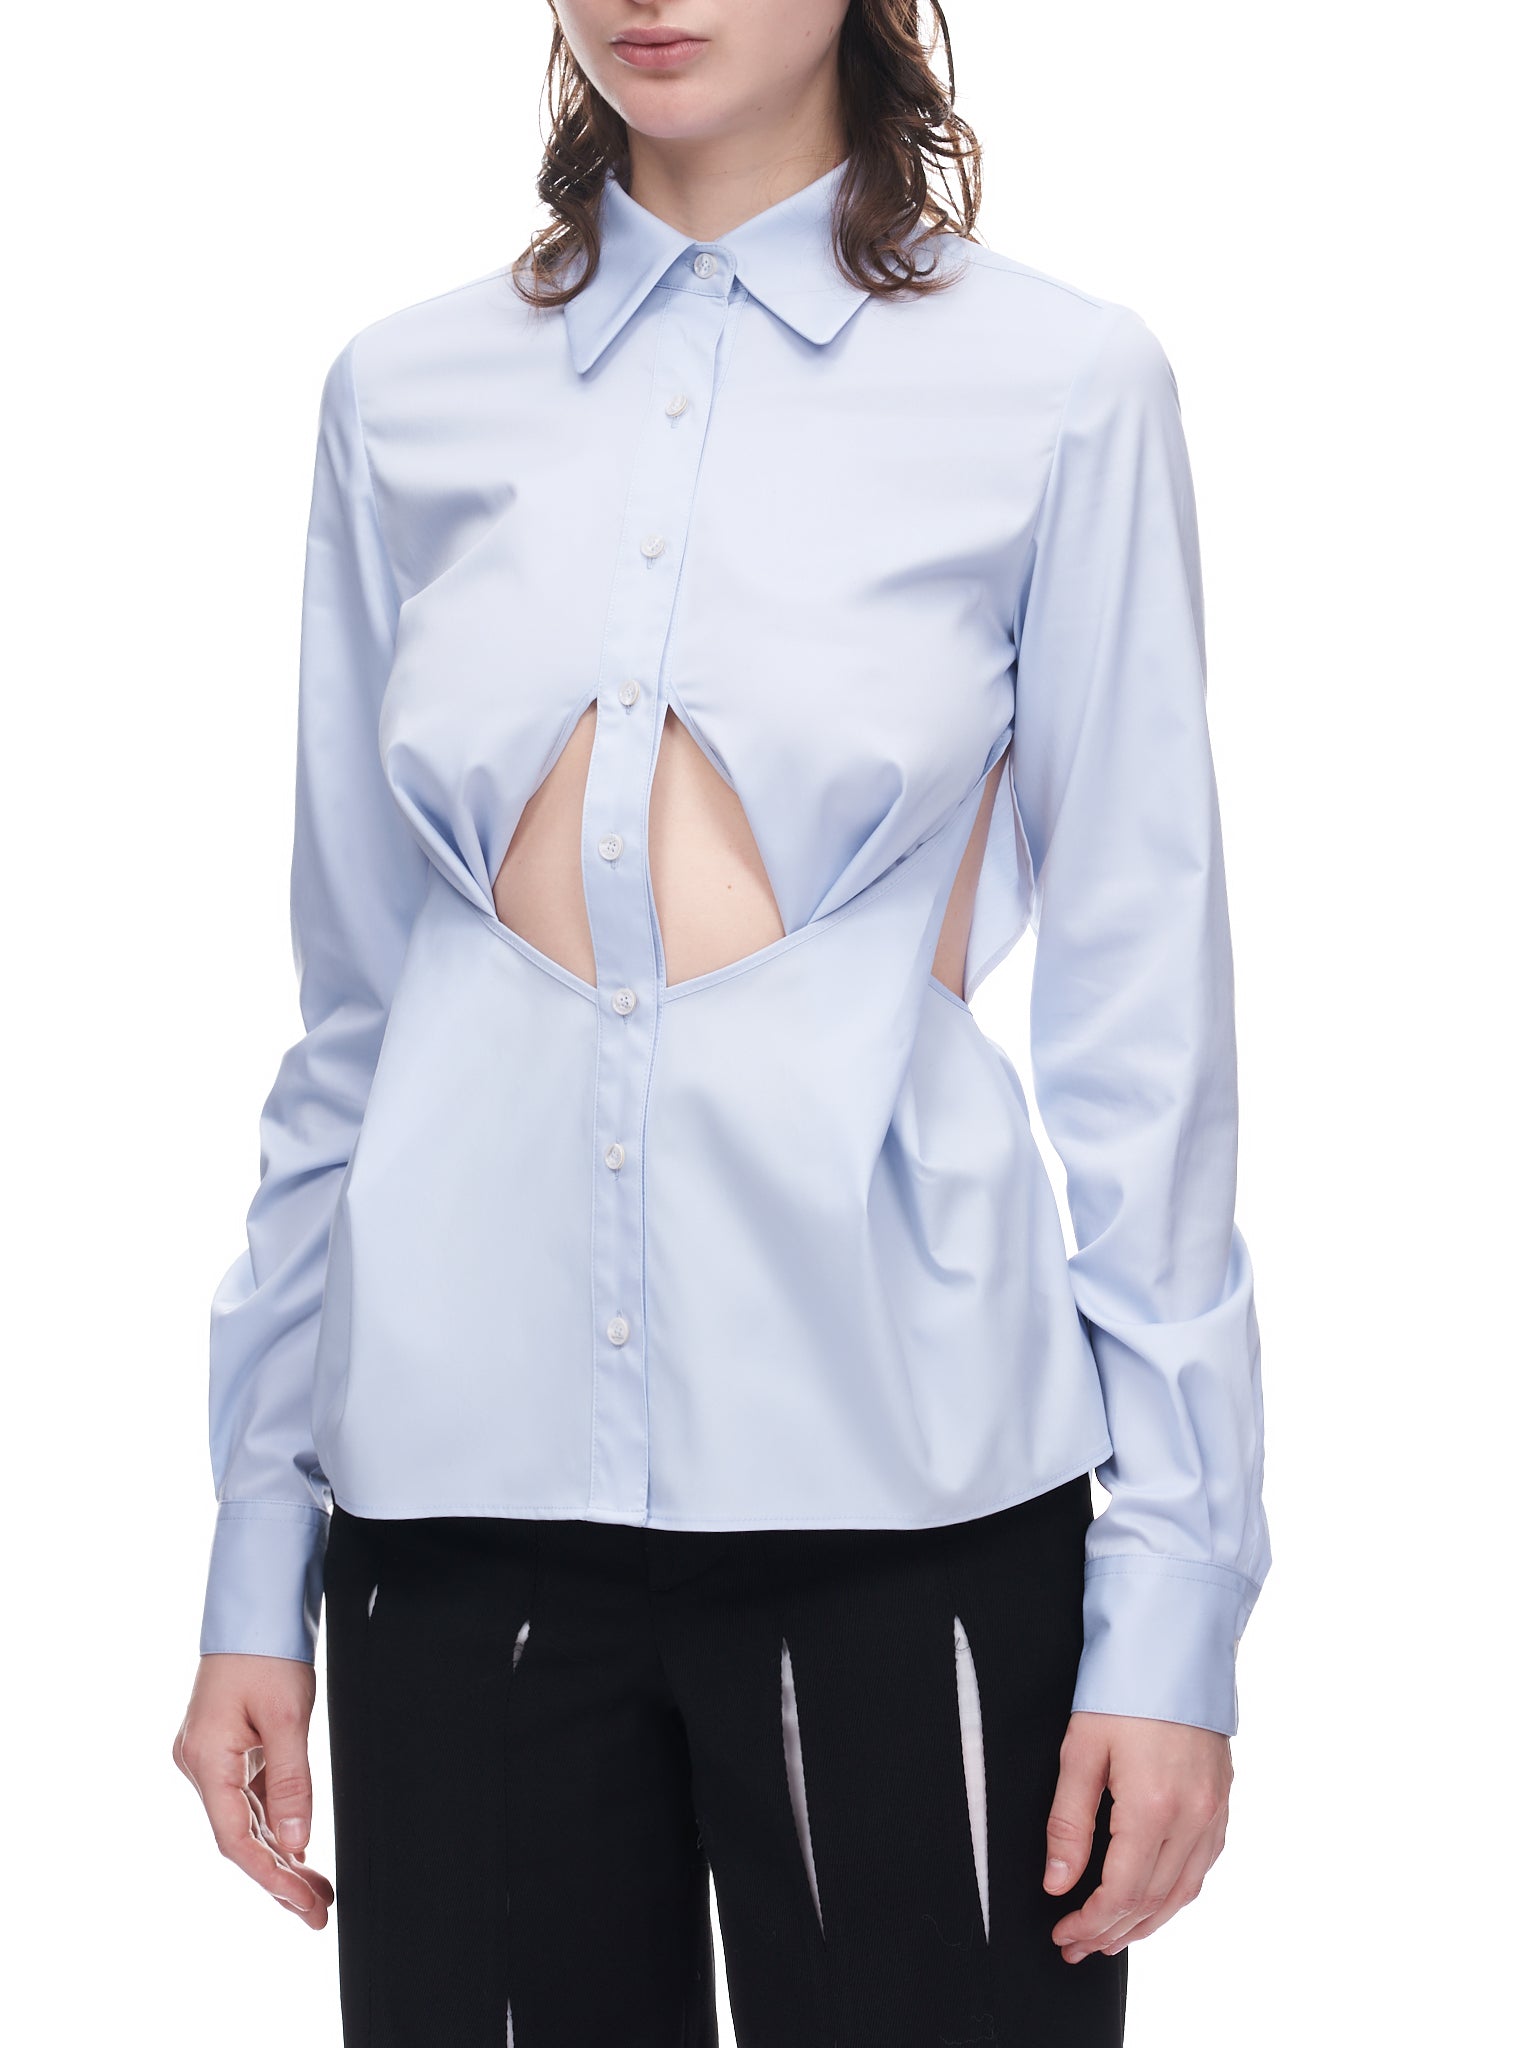 Underbust Cutout Button Up Shirt (SH01-SKYBLUE)